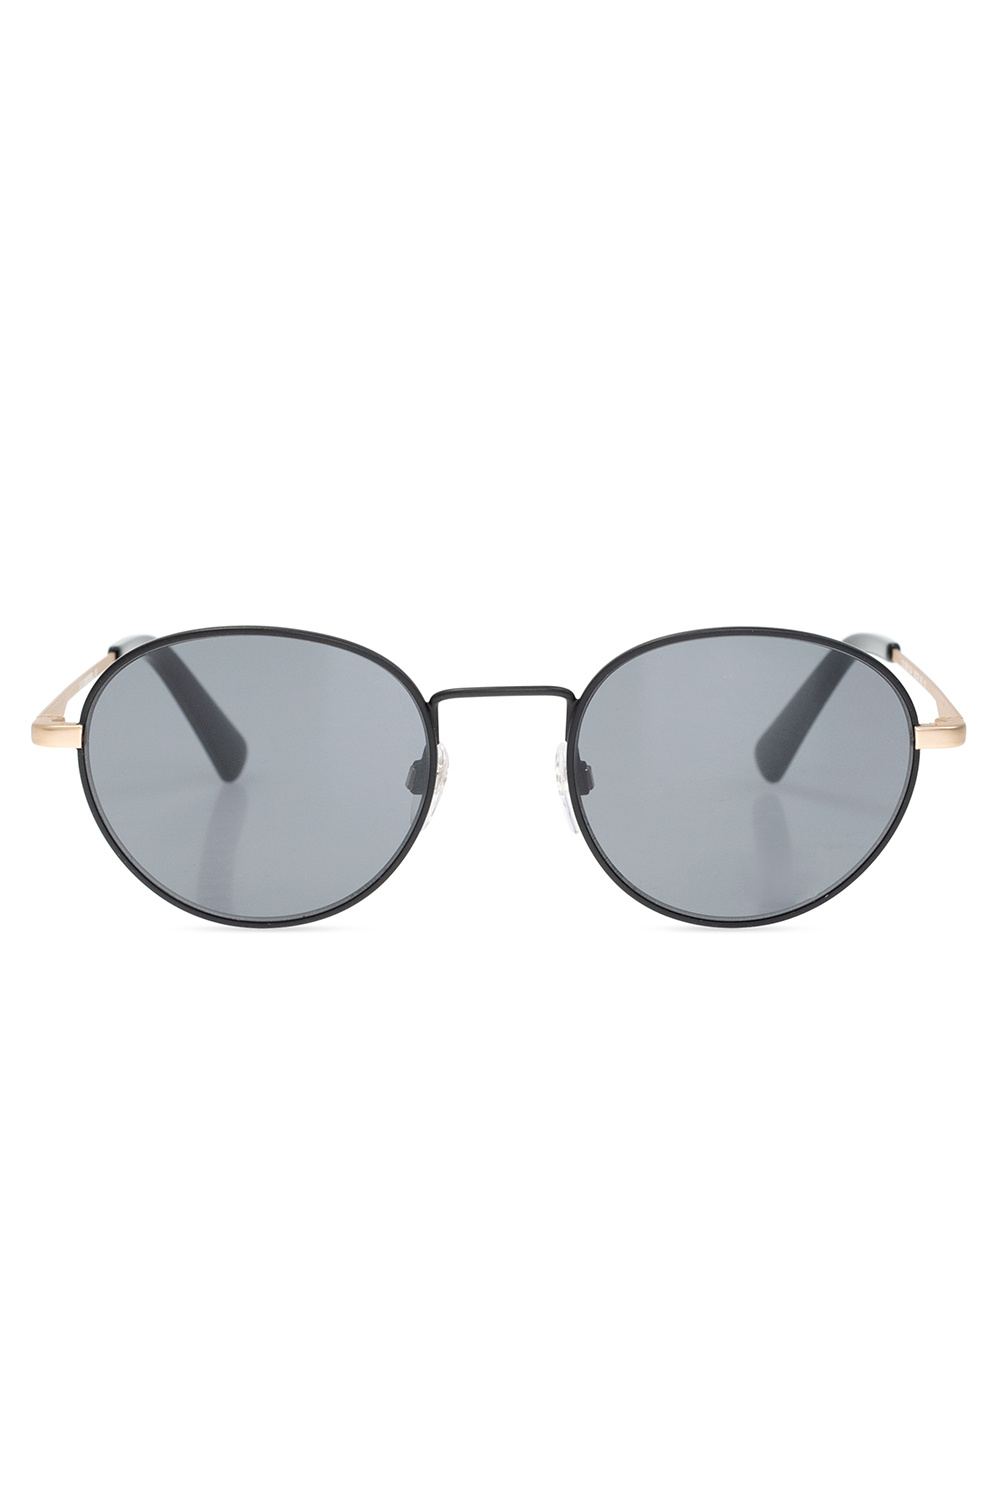 Diesel ‘DL0290’ sunglasses